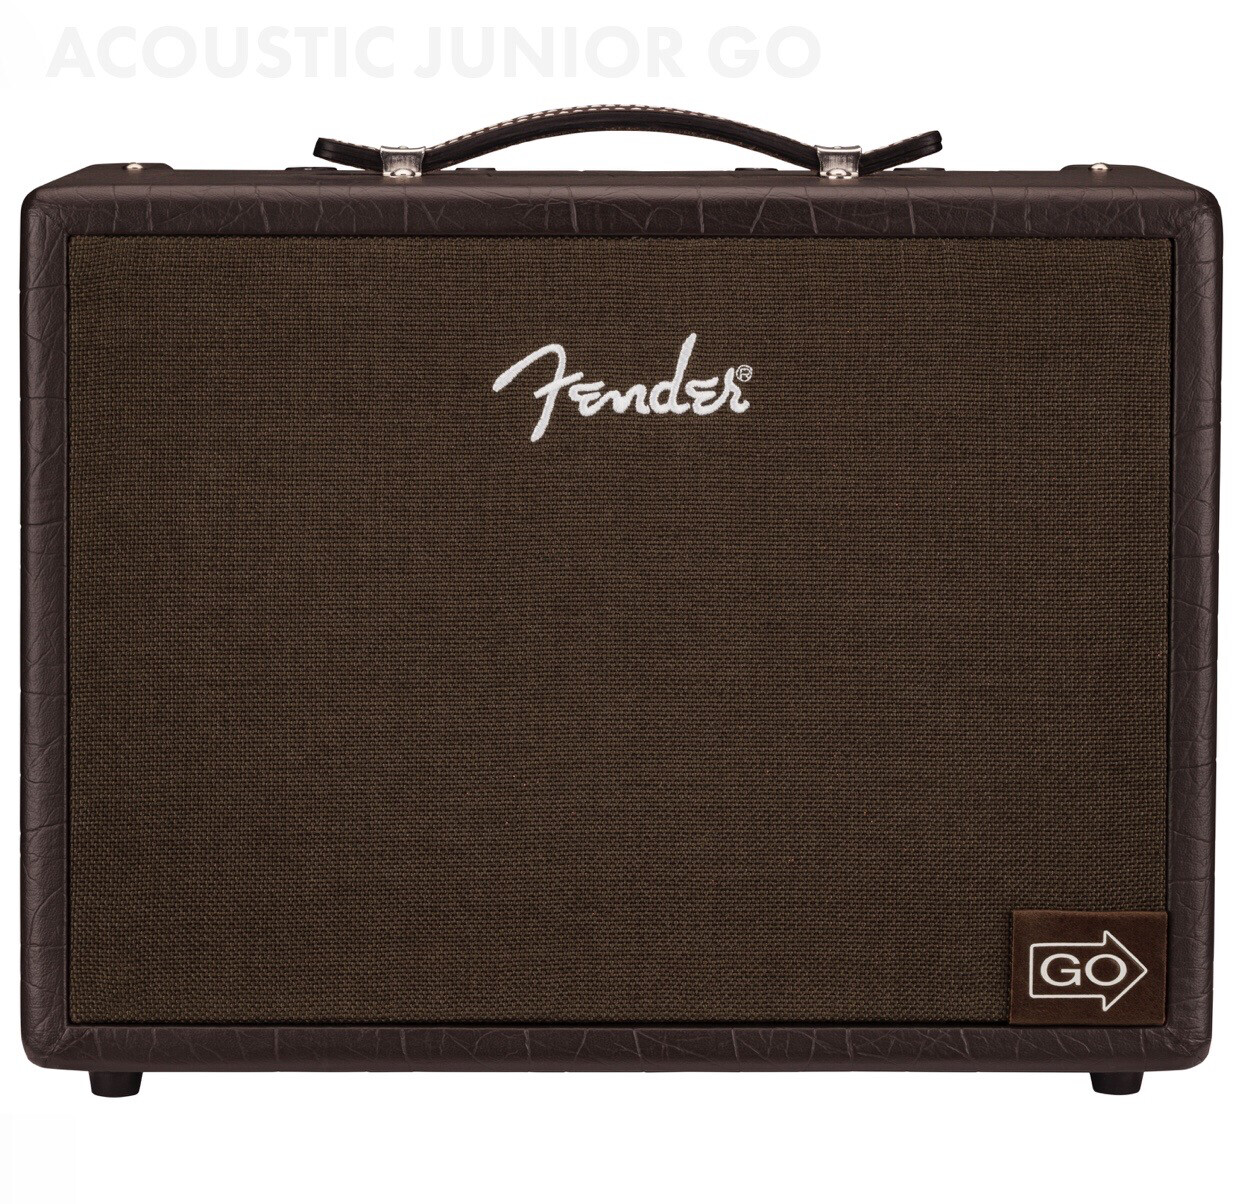 Fender Acoustic Junior Go 120v  2314400000